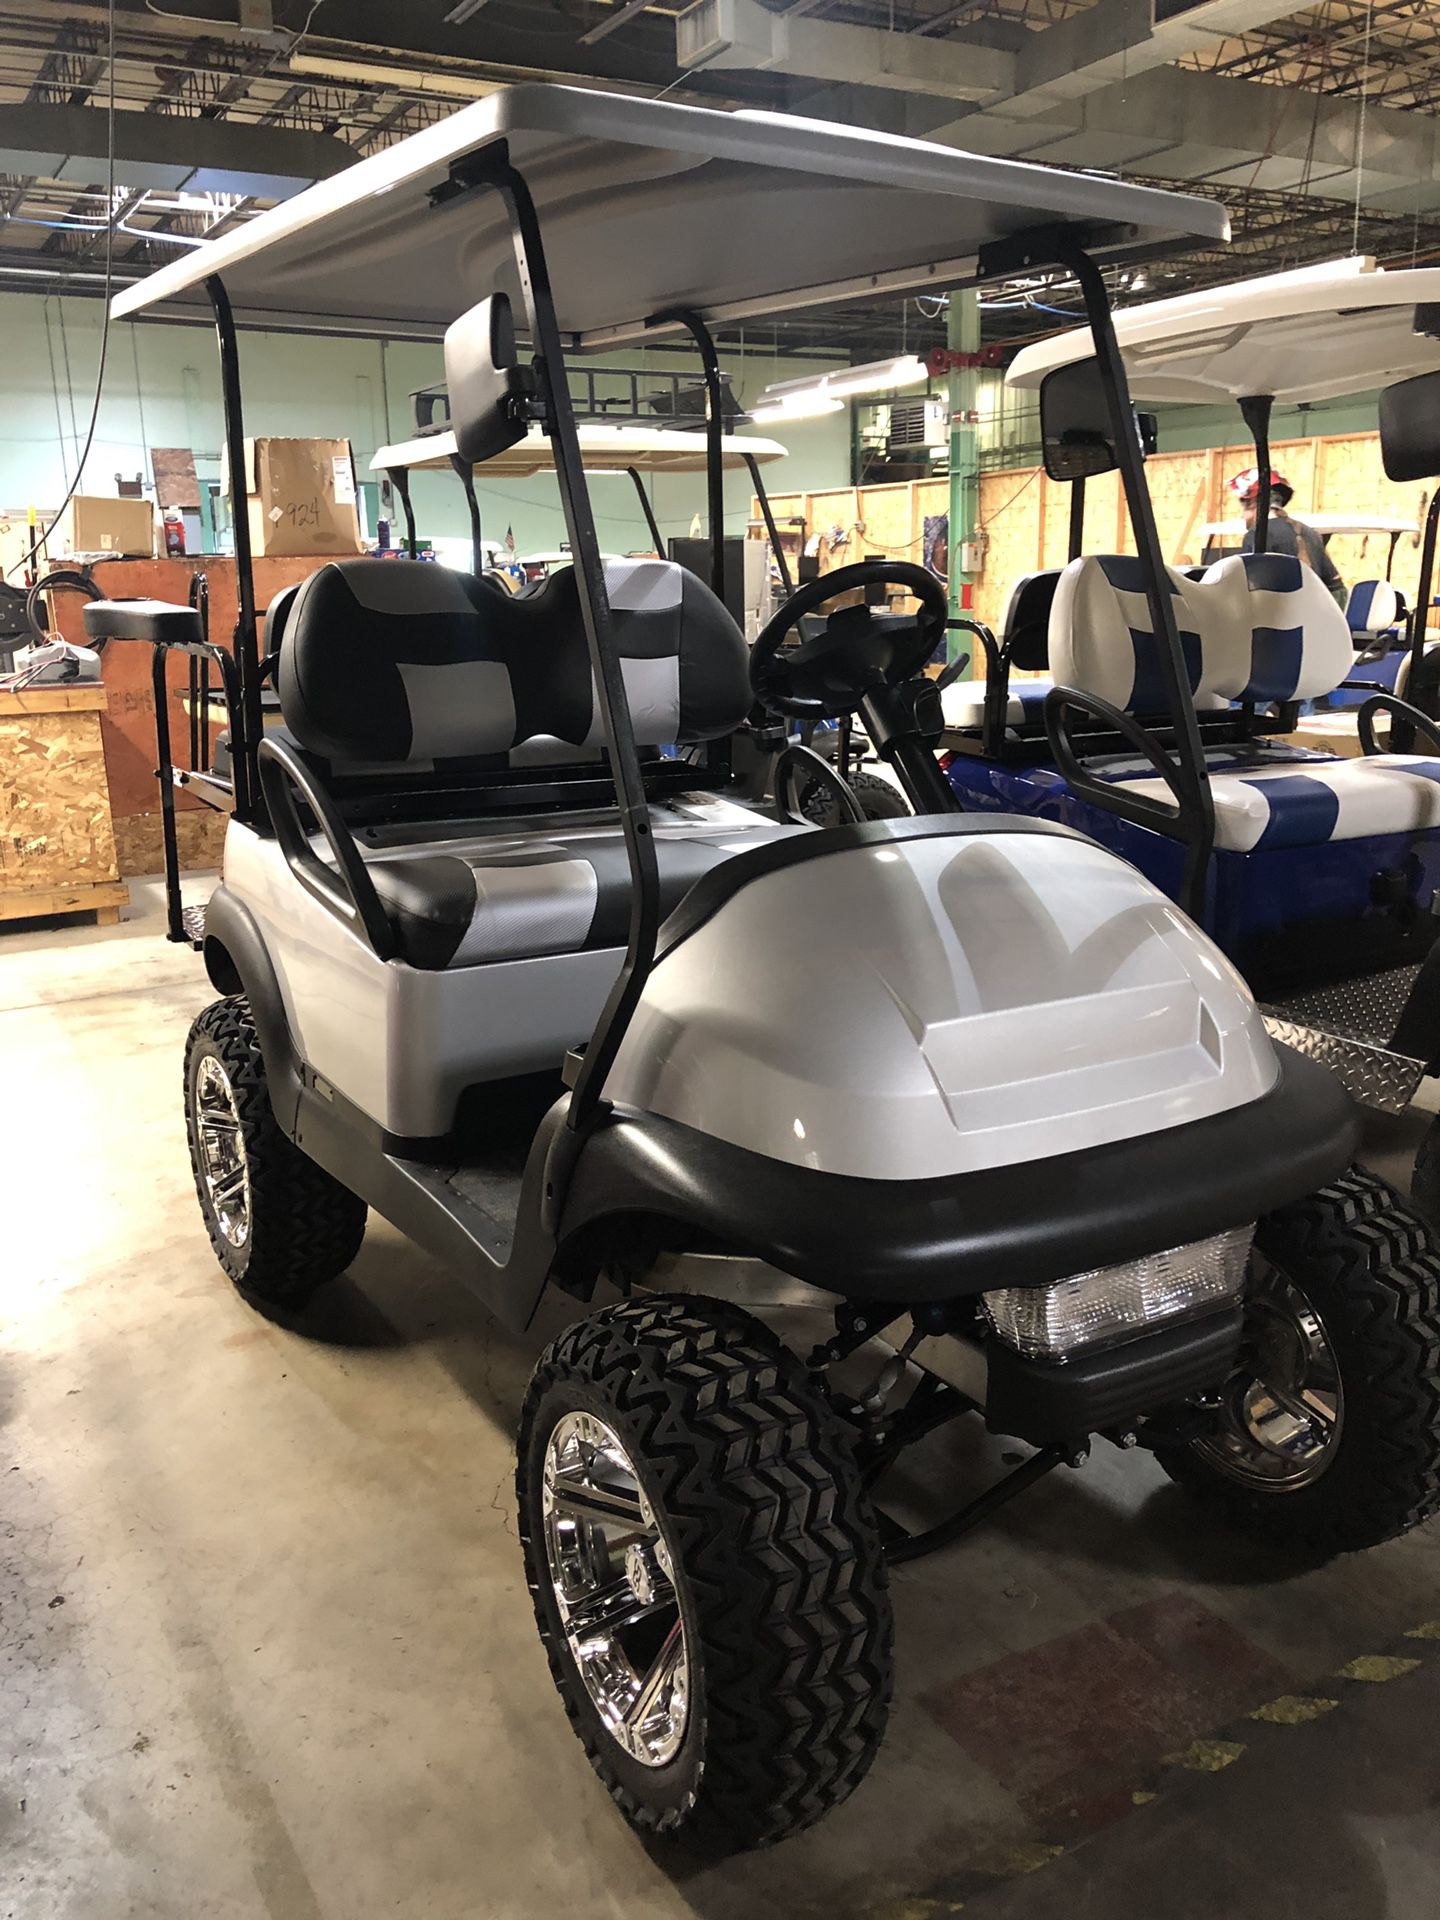 Custom golf carts starting at 3500